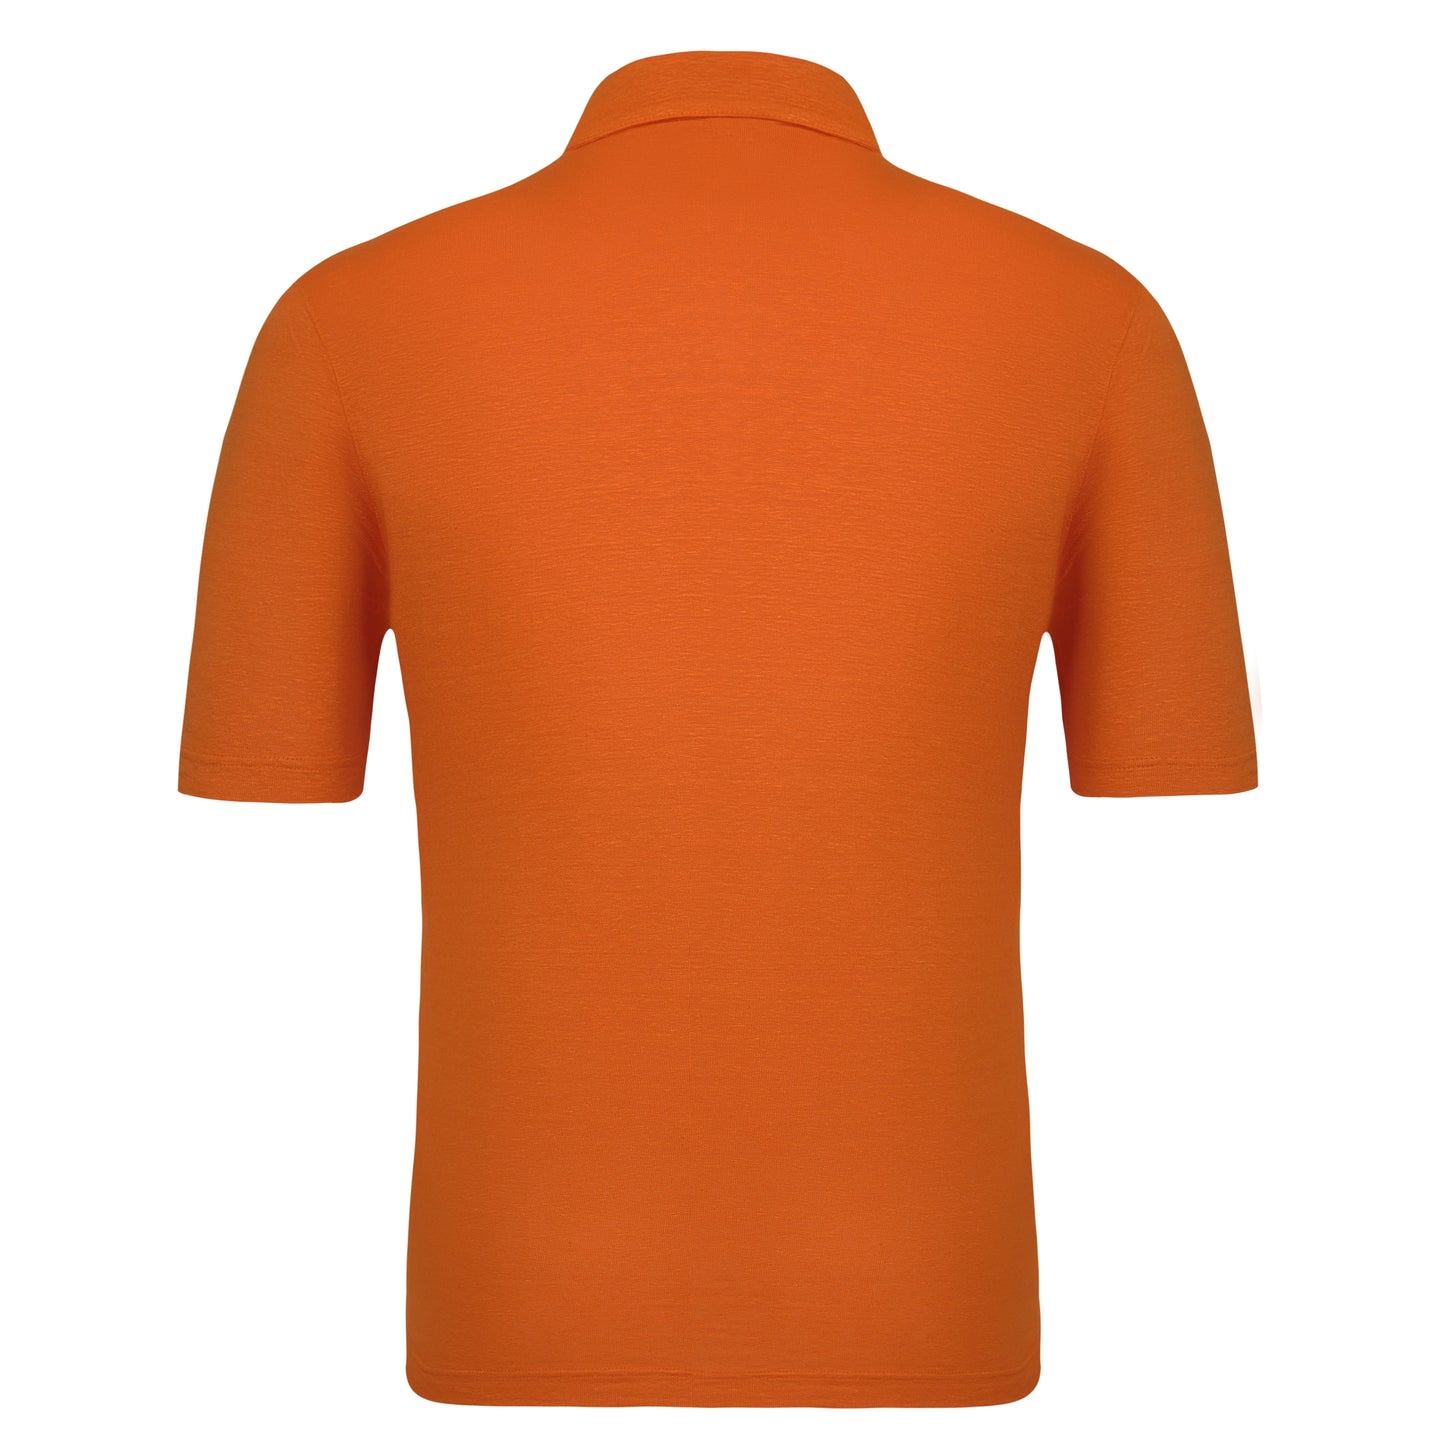 Zwei-Knopf-Poloshirt aus Leinenmischung in leuchtendem Orange